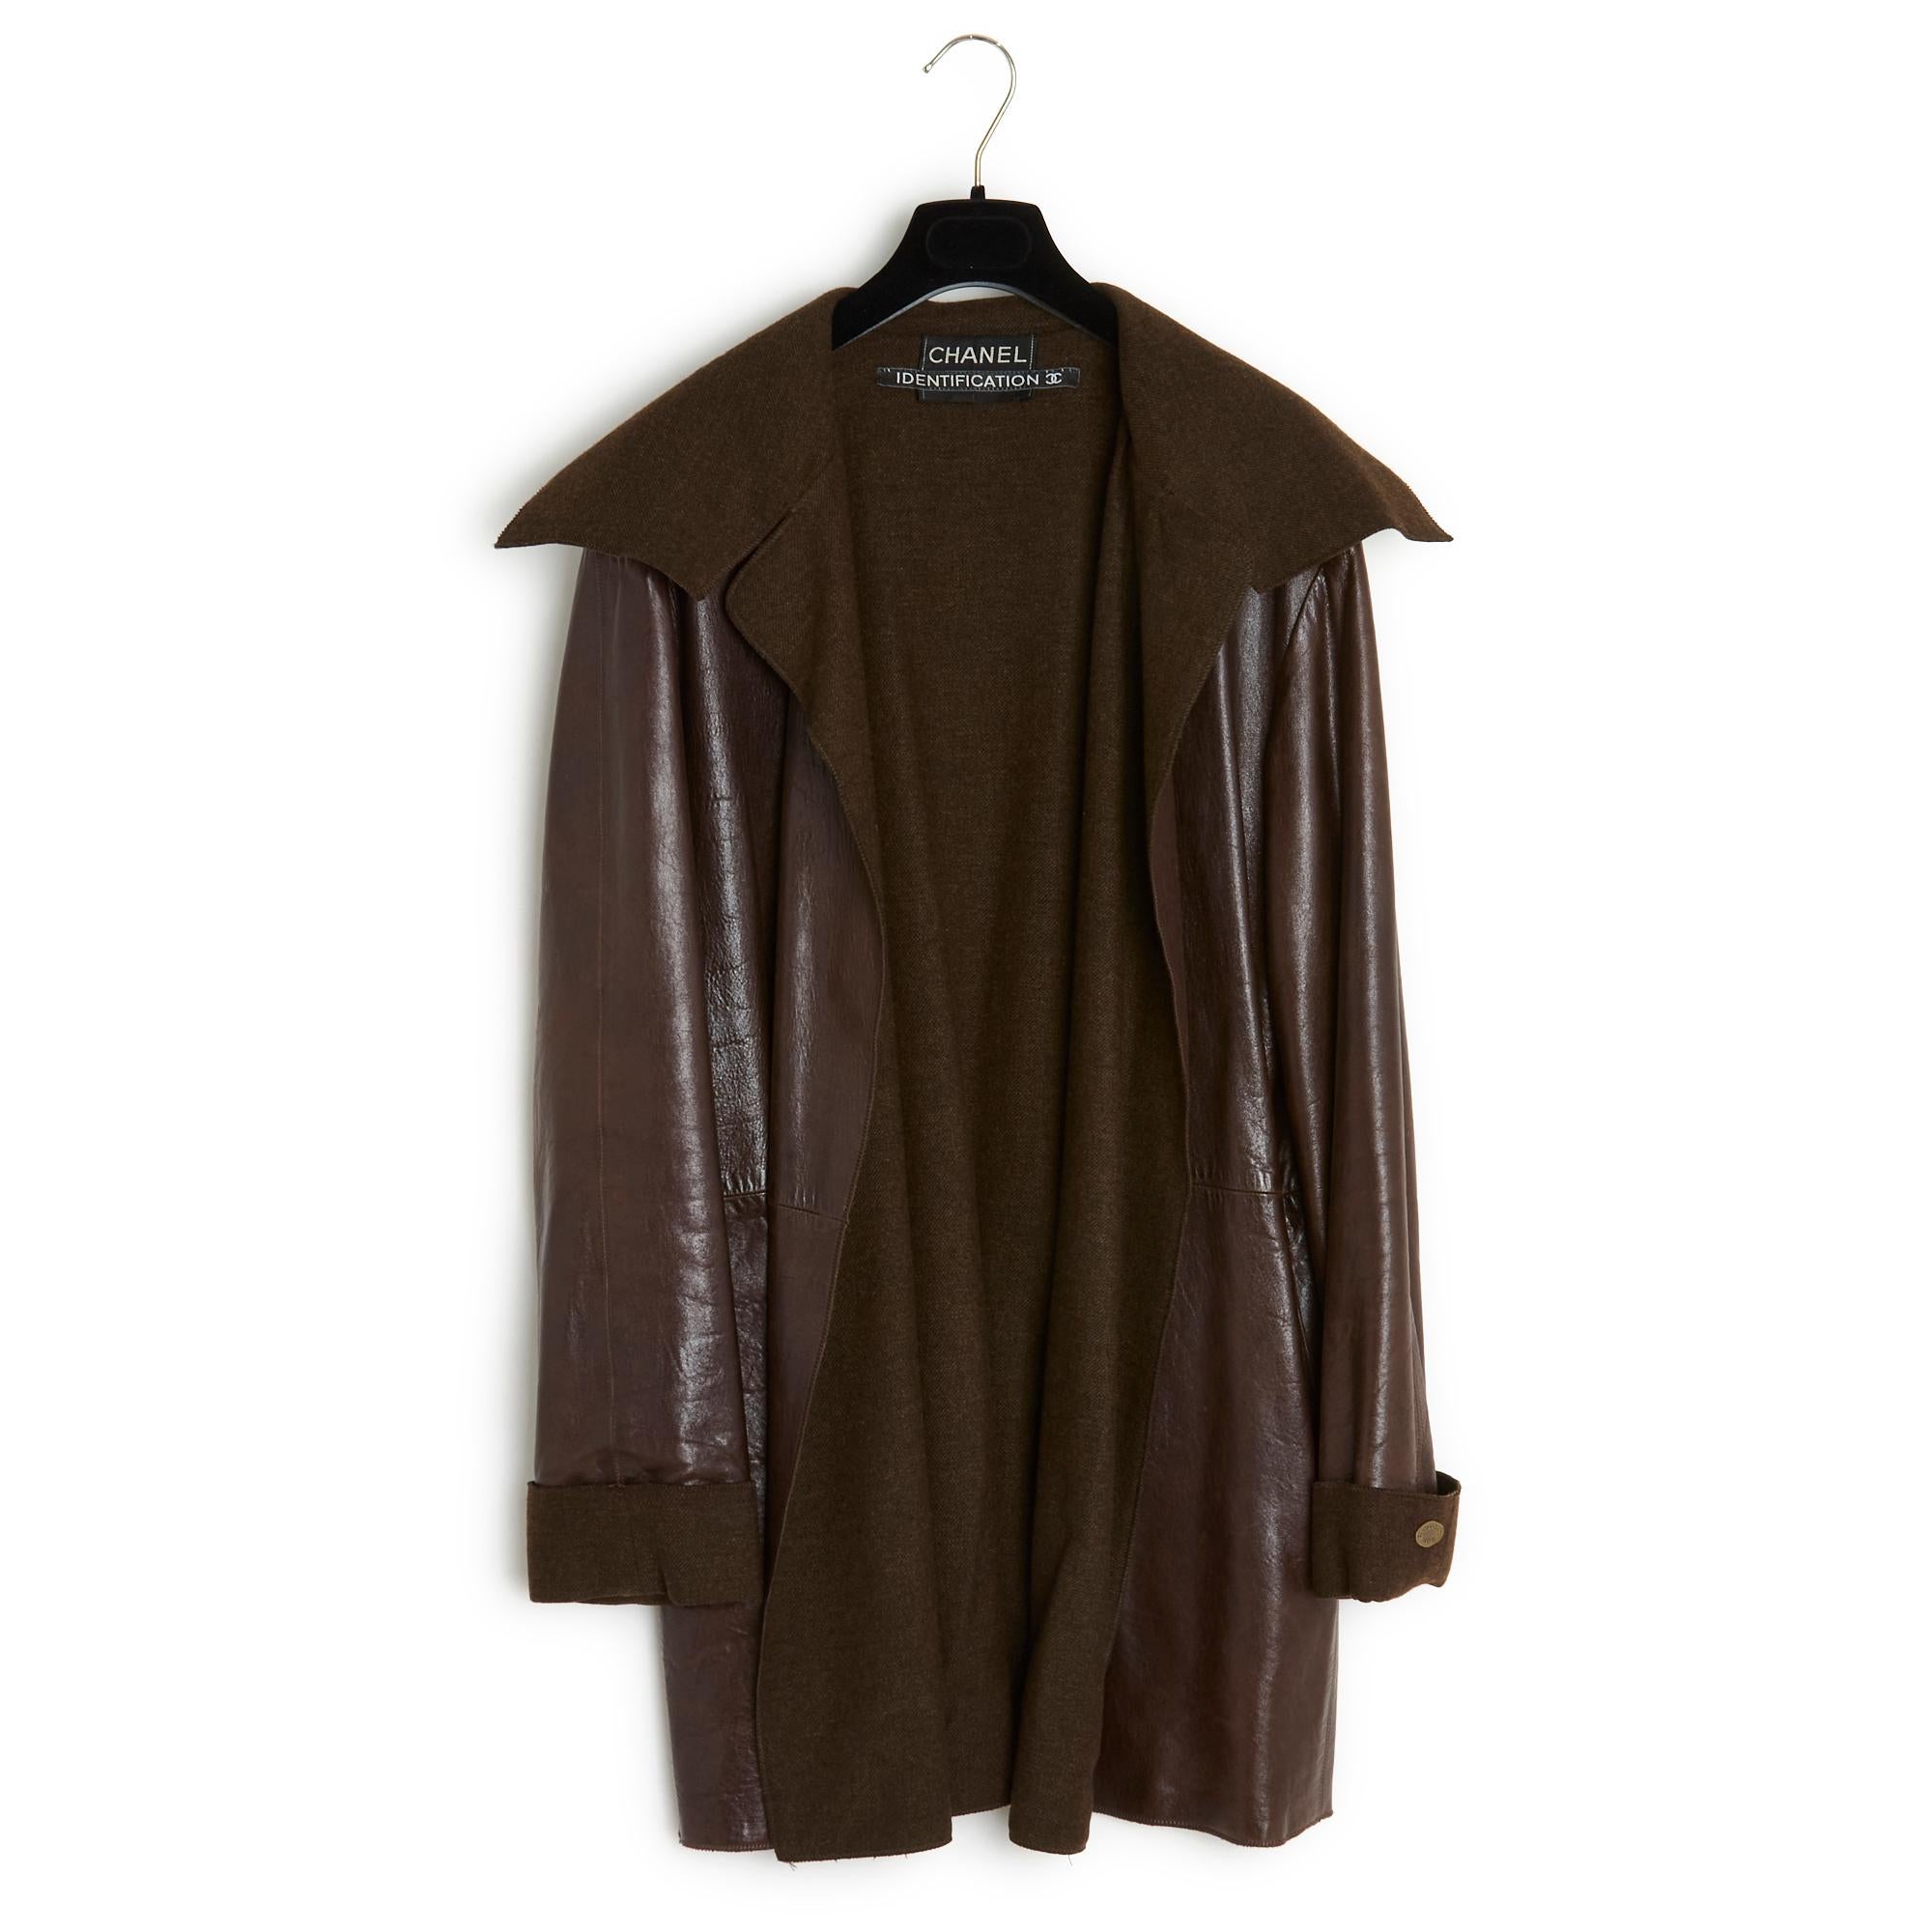 Lange Jacke von Chanel aus der Kollektion AW1999 oder Mantel der Zwischensaison aus ultraweichem dunkelbraunem Leder, übergroßes Volumen, breiter gekerbter Kragen, 2 seitliche Einschubtaschen, lange Ärmel mit breiten Manschetten, eine davon mit